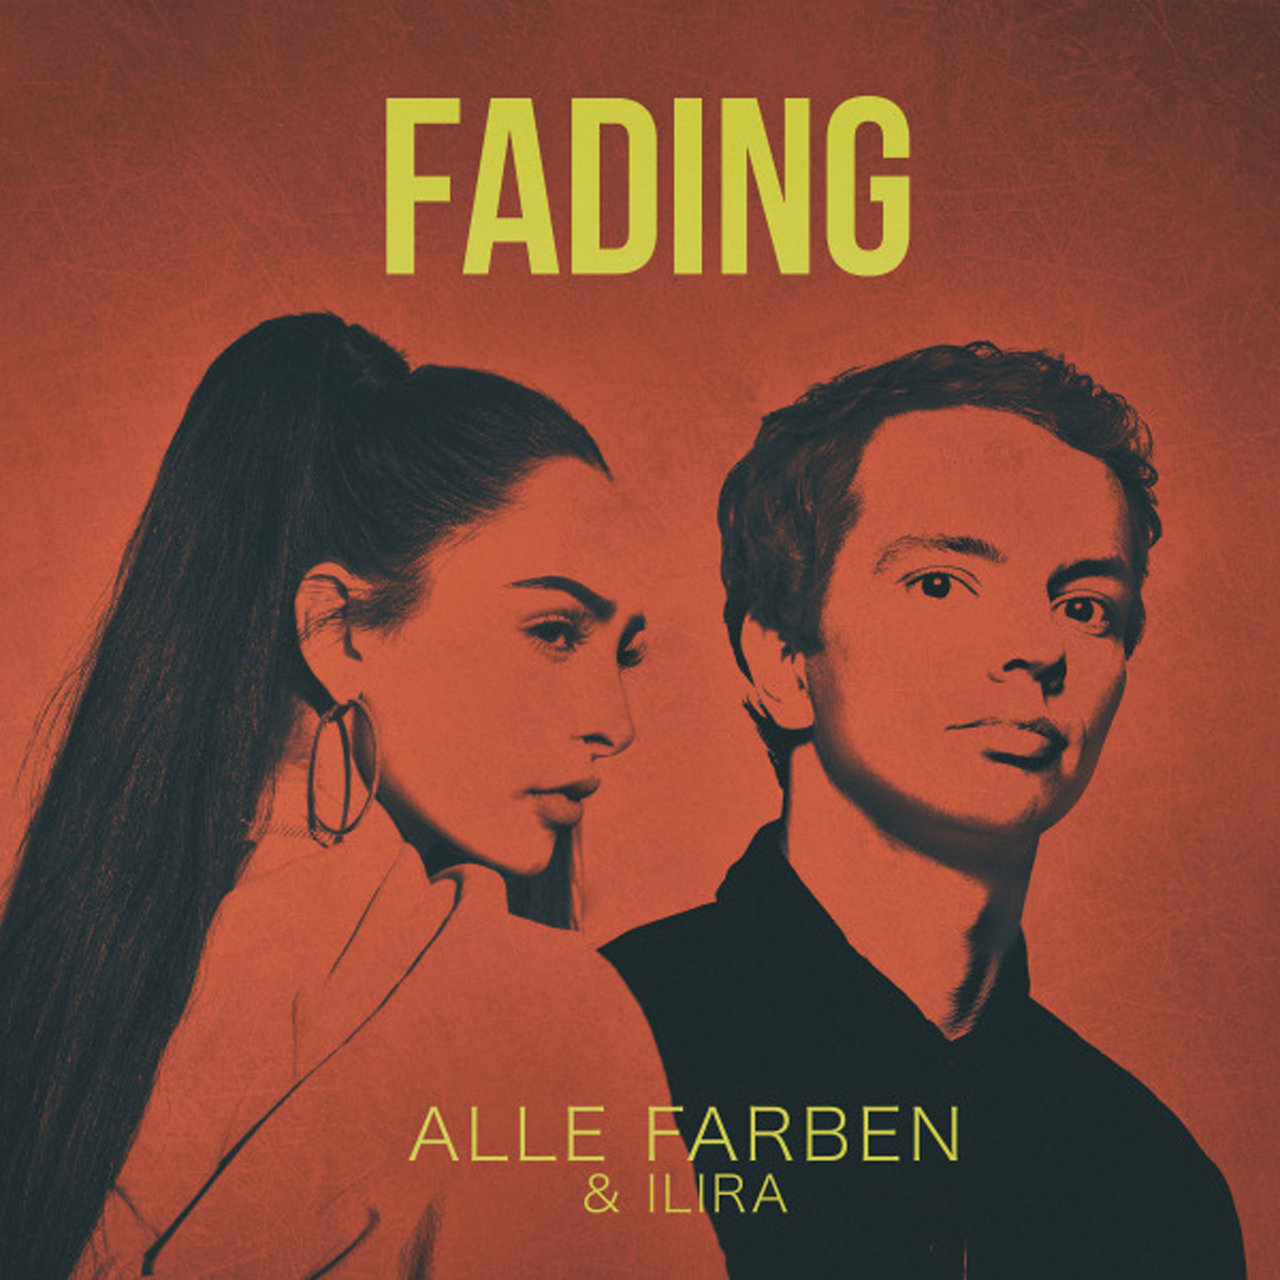 Alle Farben & ILIRA — Fading cover artwork